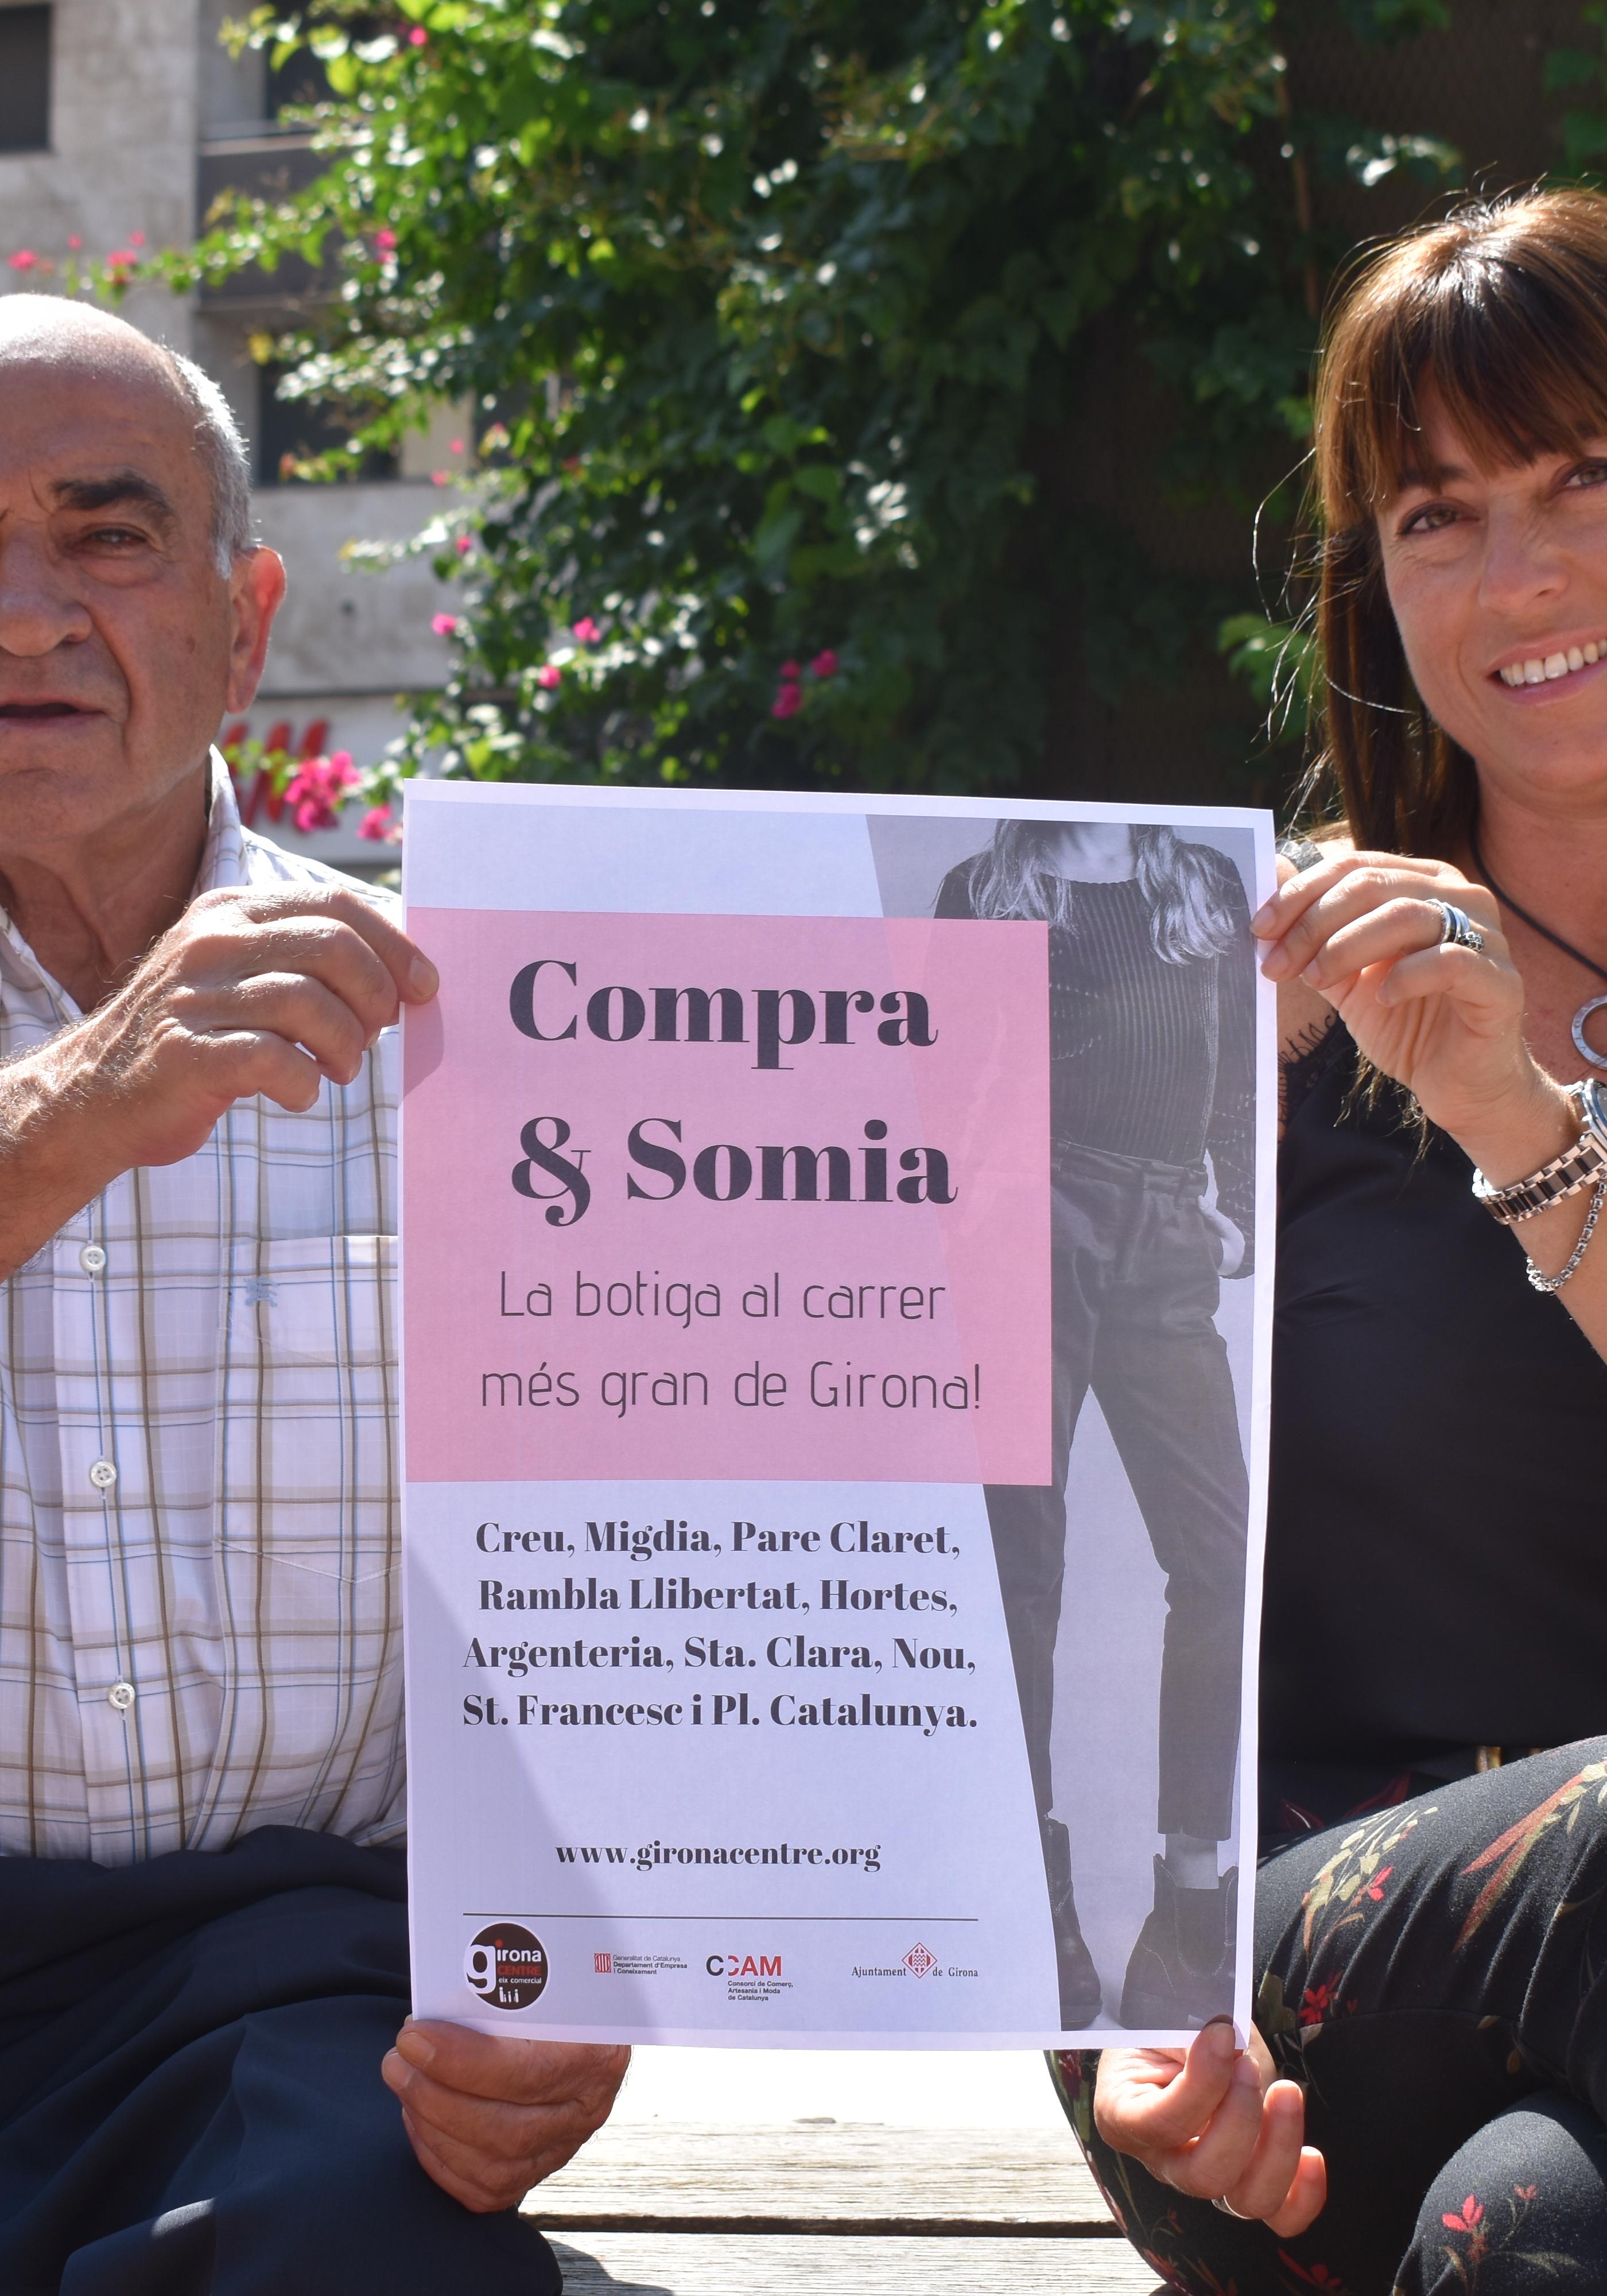 La VI edició de la botiga al carrer Compra & Somia de Girona  serà el 5 d’octubre